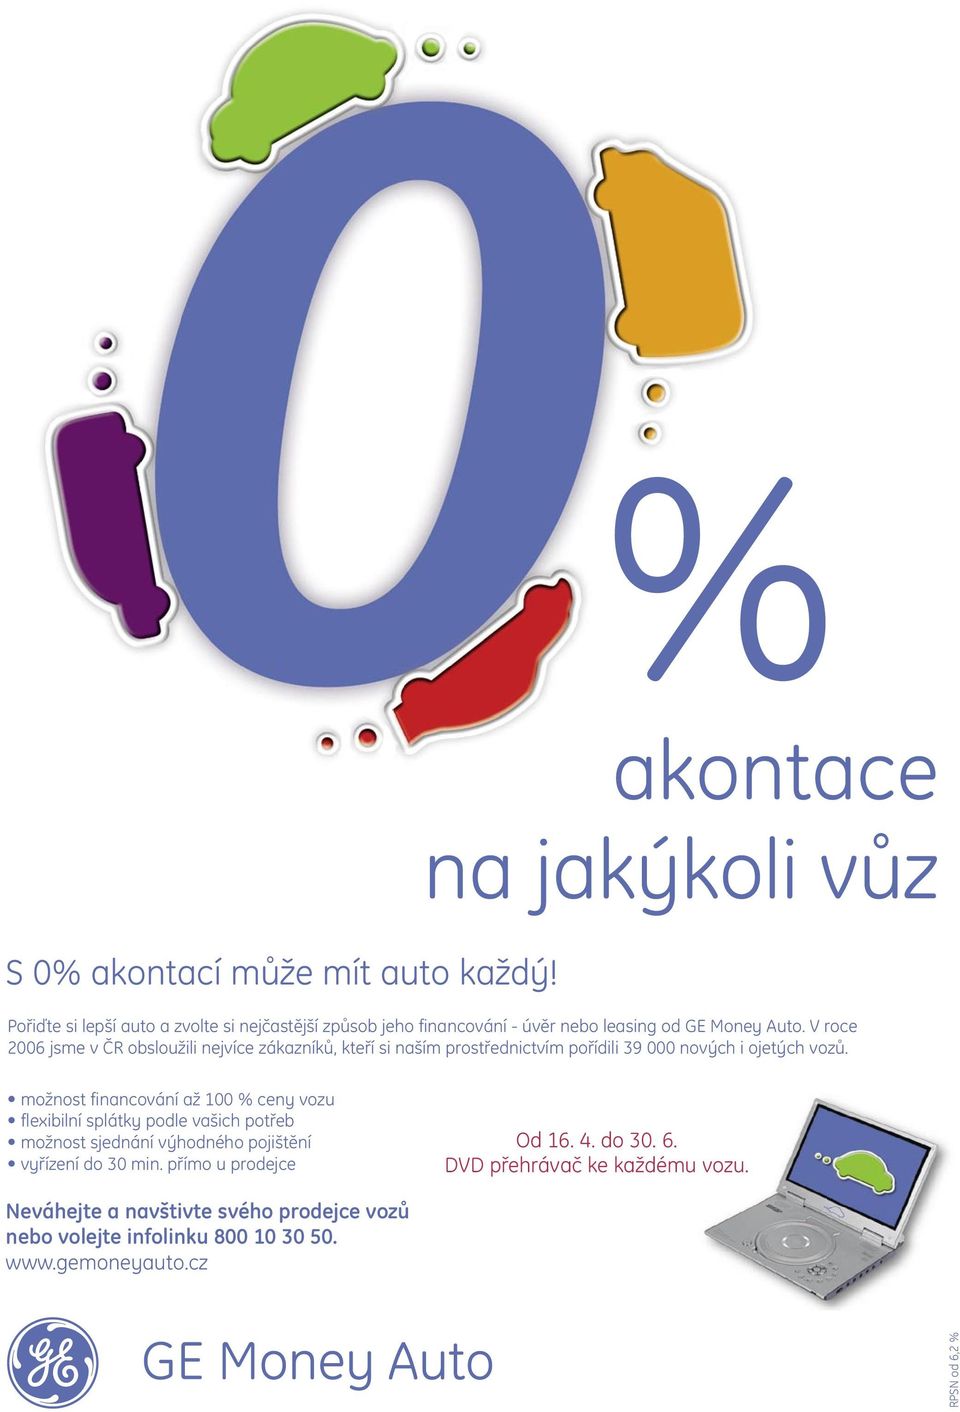 V roce 2006 jsme v ČR obsloužili nejvíce zákazníků, kteří si naším prostřednictvím pořídili 39 000 nových i ojetých vozů.